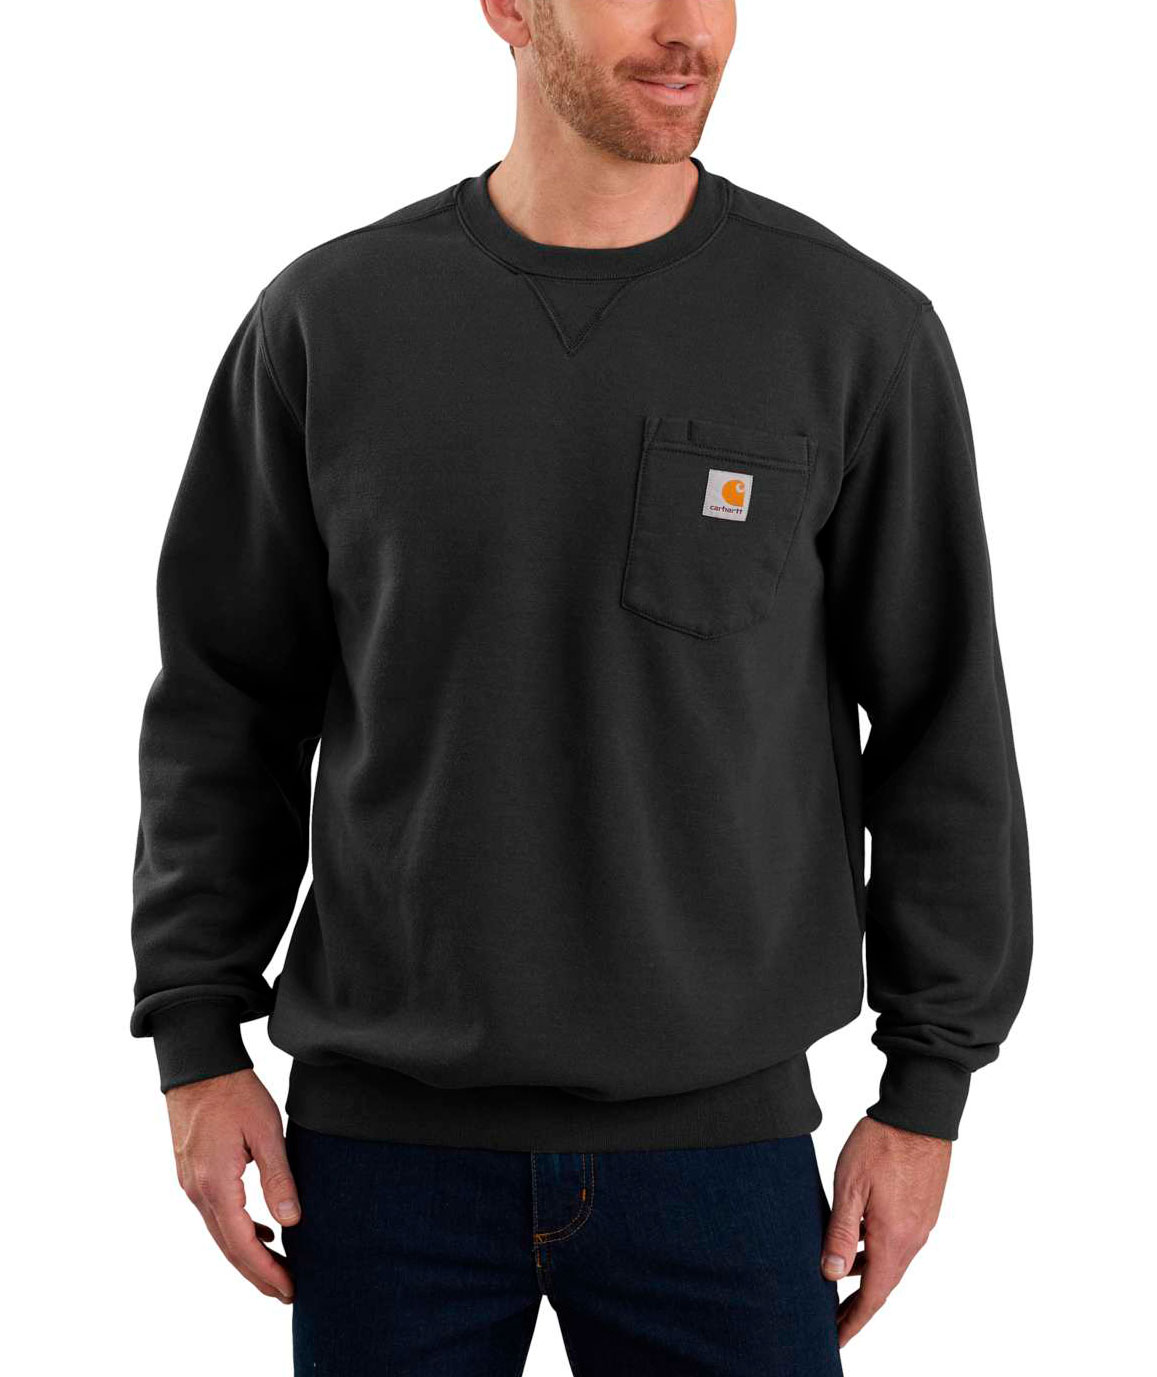 Carhartt sweatshirt Rabatt 71 % HERREN Pullovers & Sweatshirts Mit Reißverschluss Rot S 